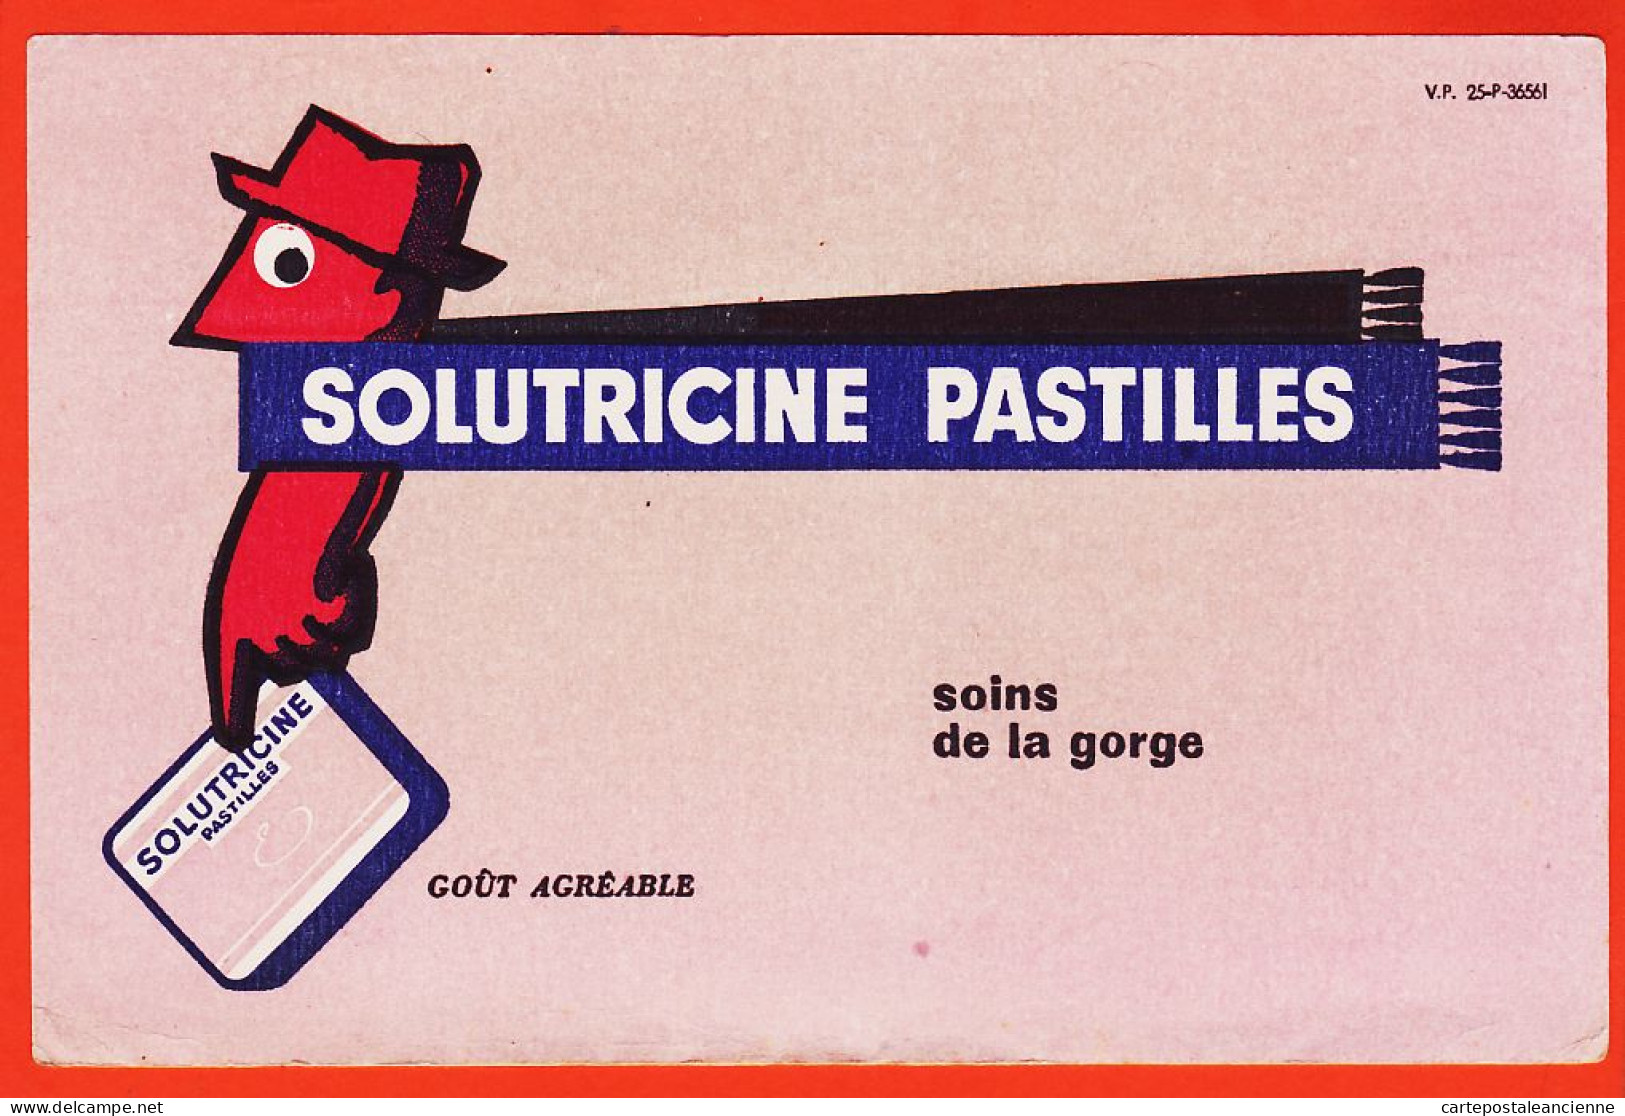 06151 / SOLUTRICINE Pastilles Soins De La Gorge Goût Agréable V-P 25-P-36561 Buvard-Blotter - Drogerie & Apotheke